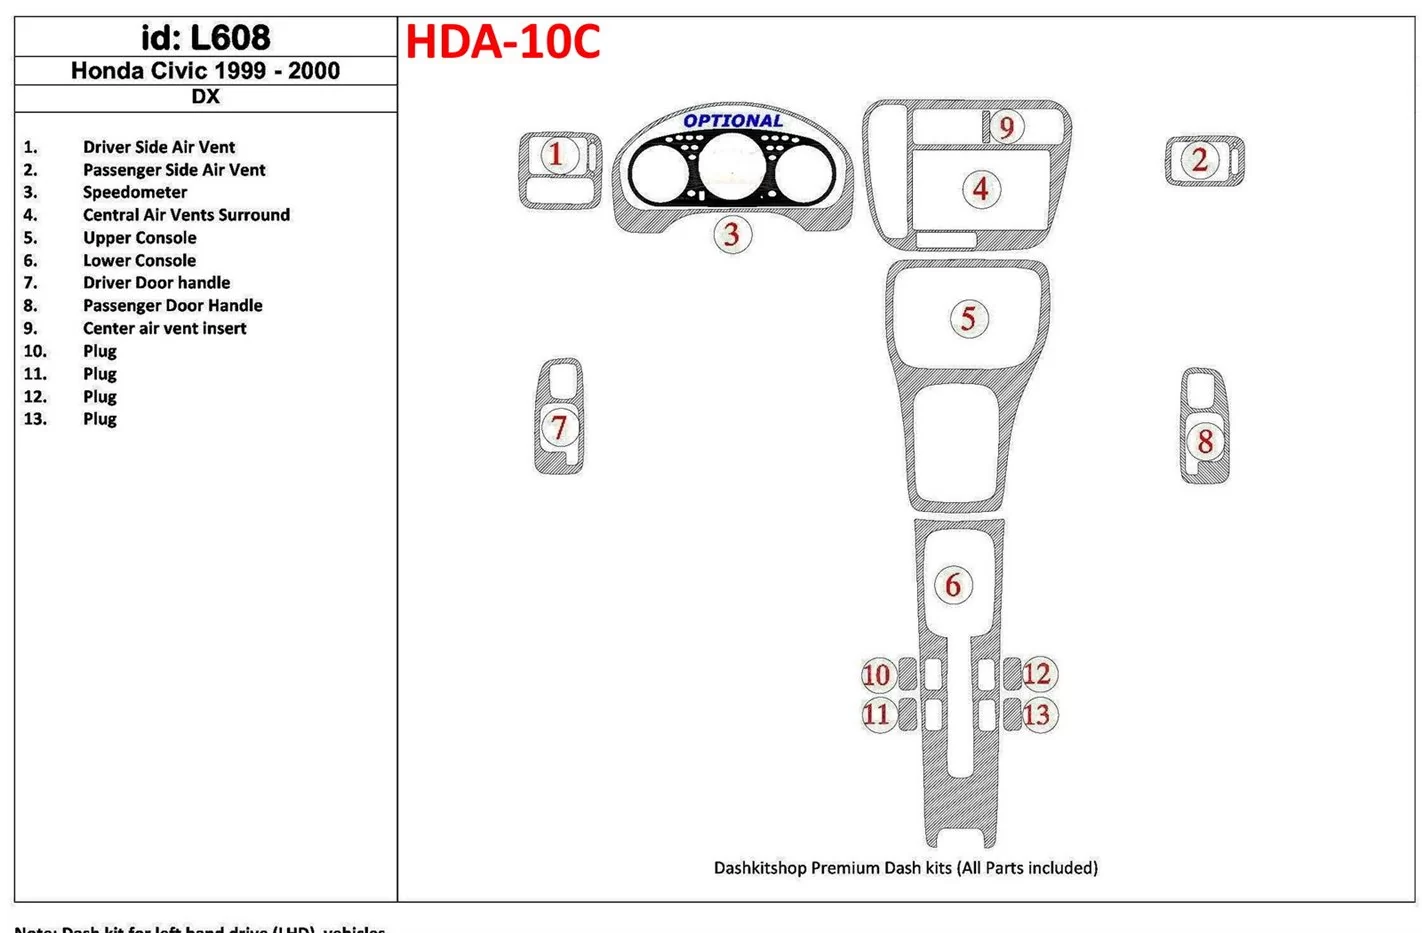 Honda Civic 1999-2000 DX, 13 Parts set BD Kit la décoration du tableau de bord - 1 - habillage decor de tableau de bord